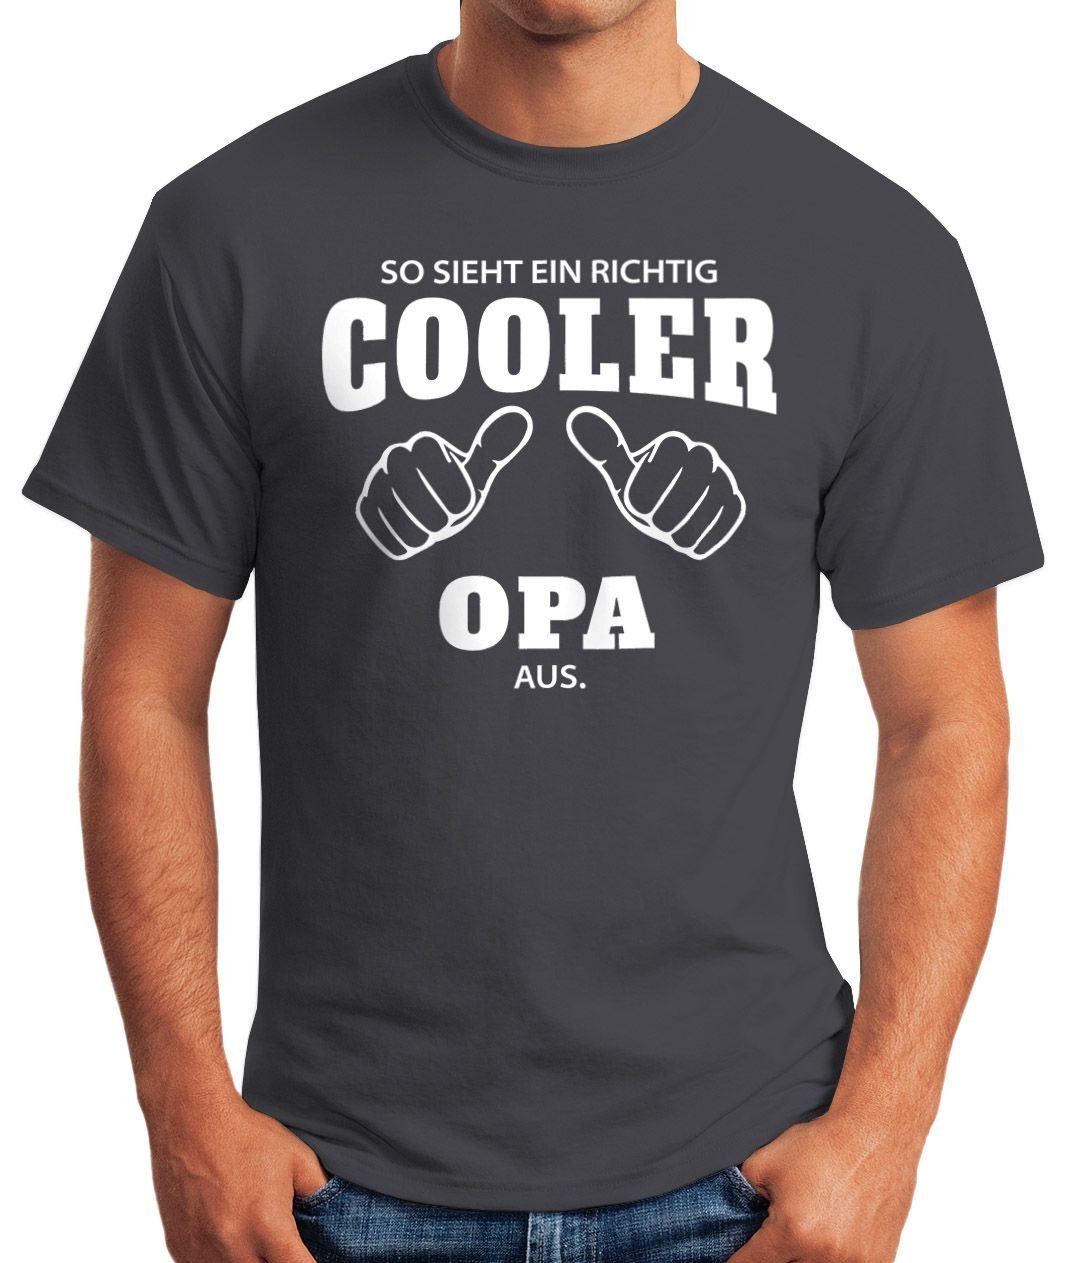 So Opa [object richtig mit T-Shirt Print Moonworks® richtig cooler aus ein sieht ein MoonWorks Object] grau Herren Print-Shirt Fun-Shirt